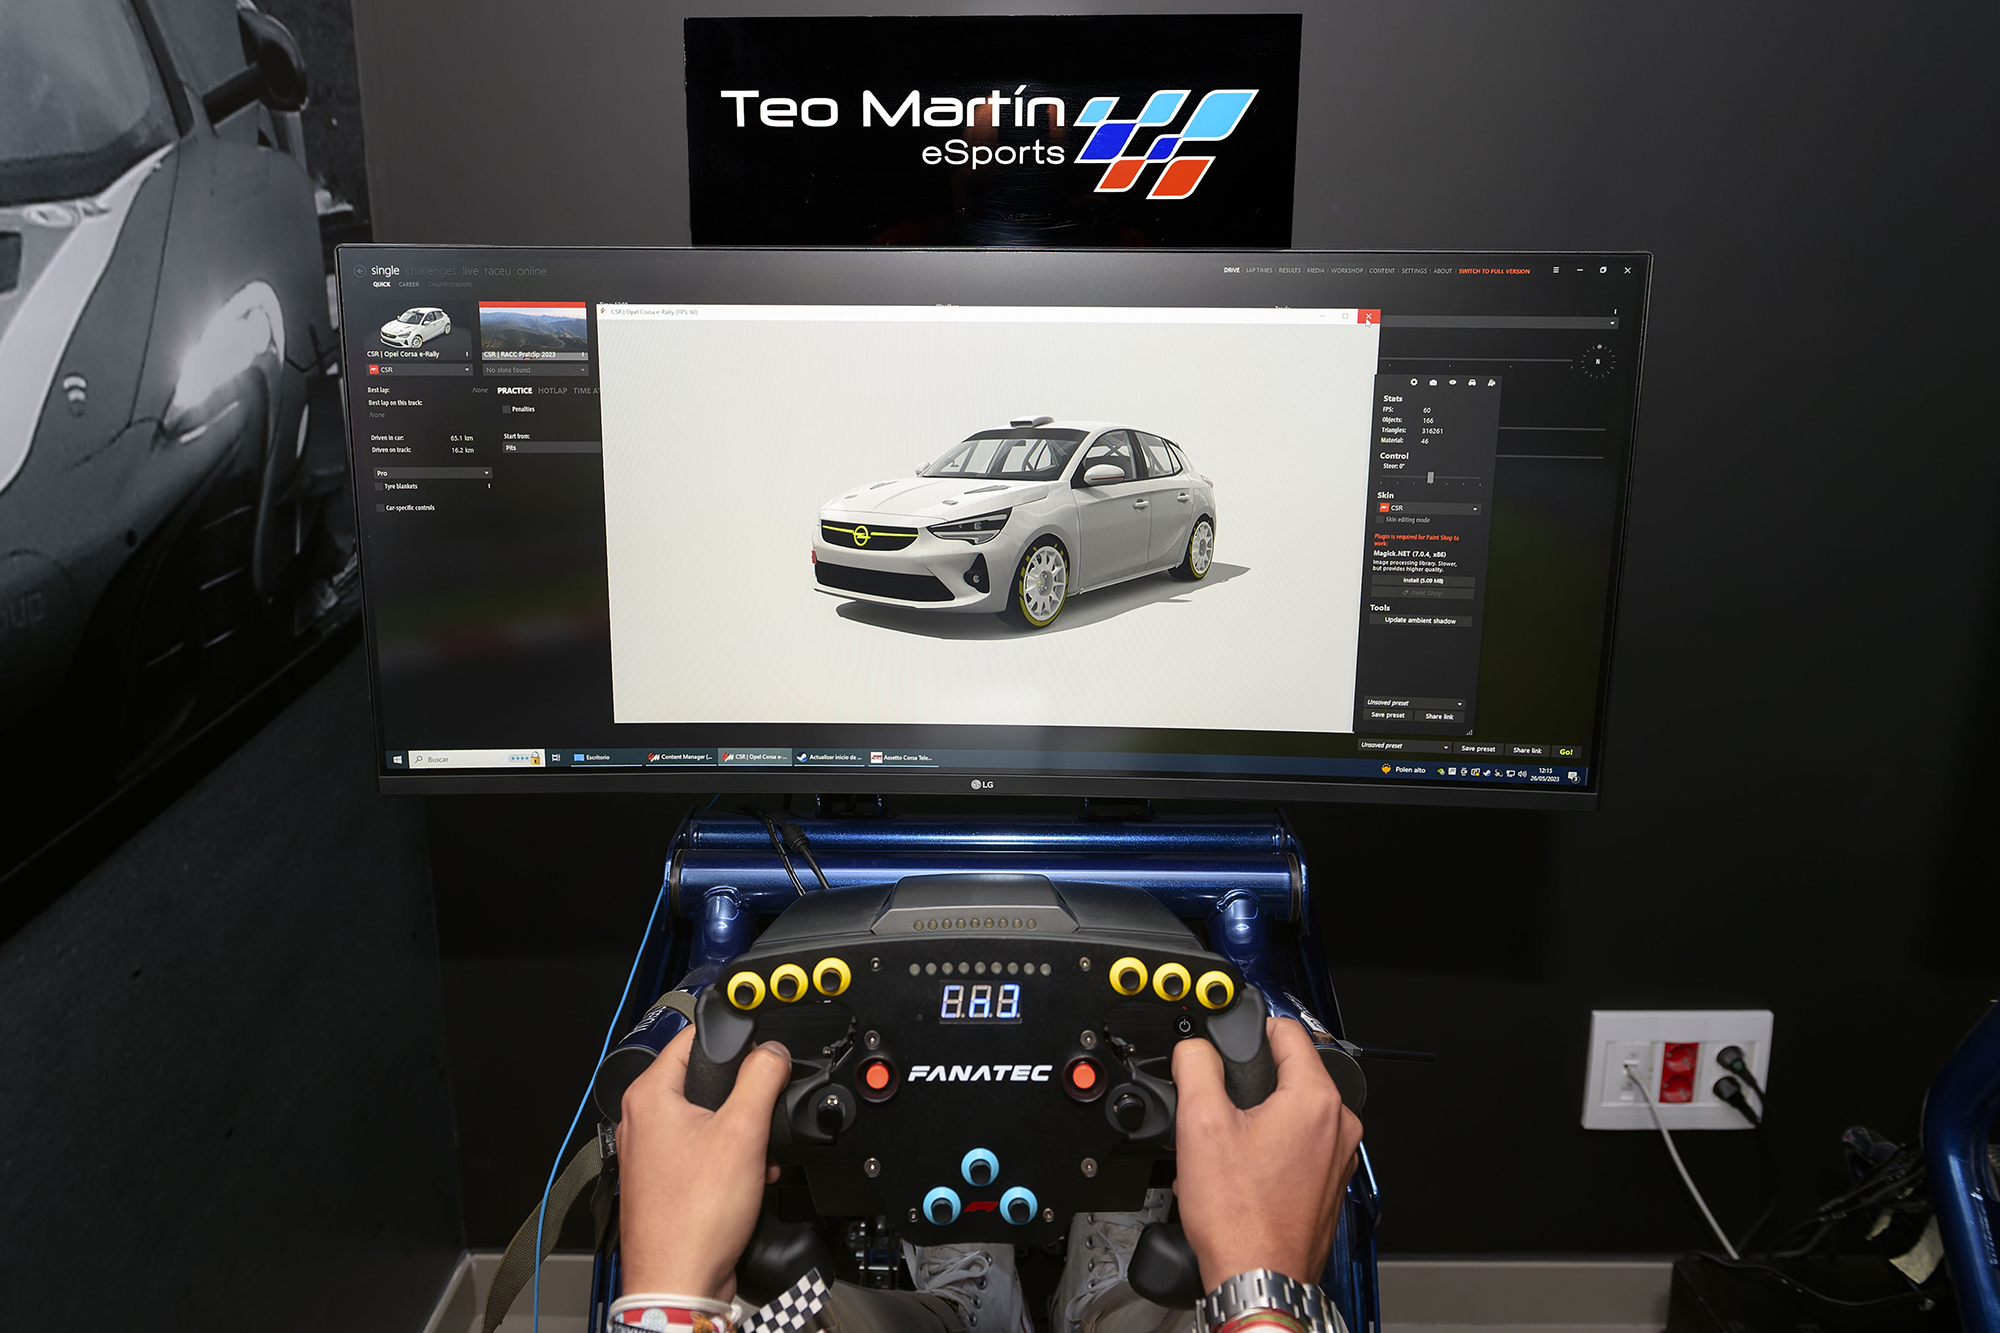 Opel Espaa tambin estar presente en los e-gaming